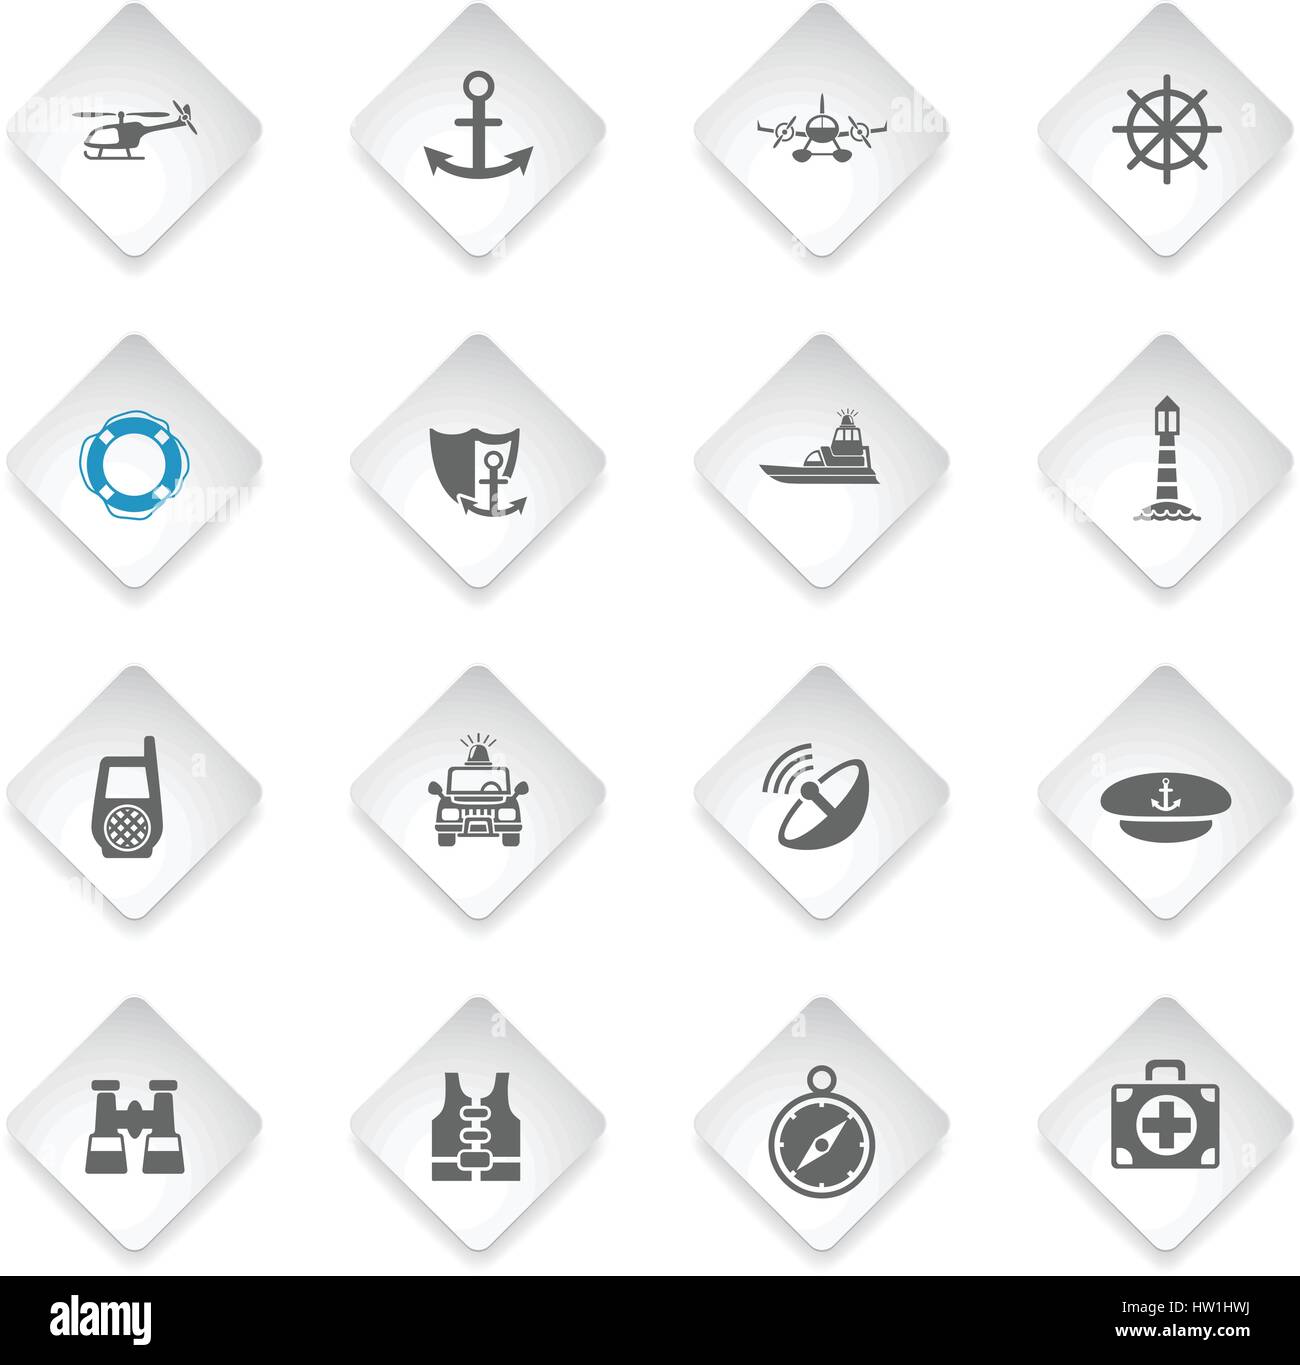 coastguard flat web icons for user interface design Stock Vector